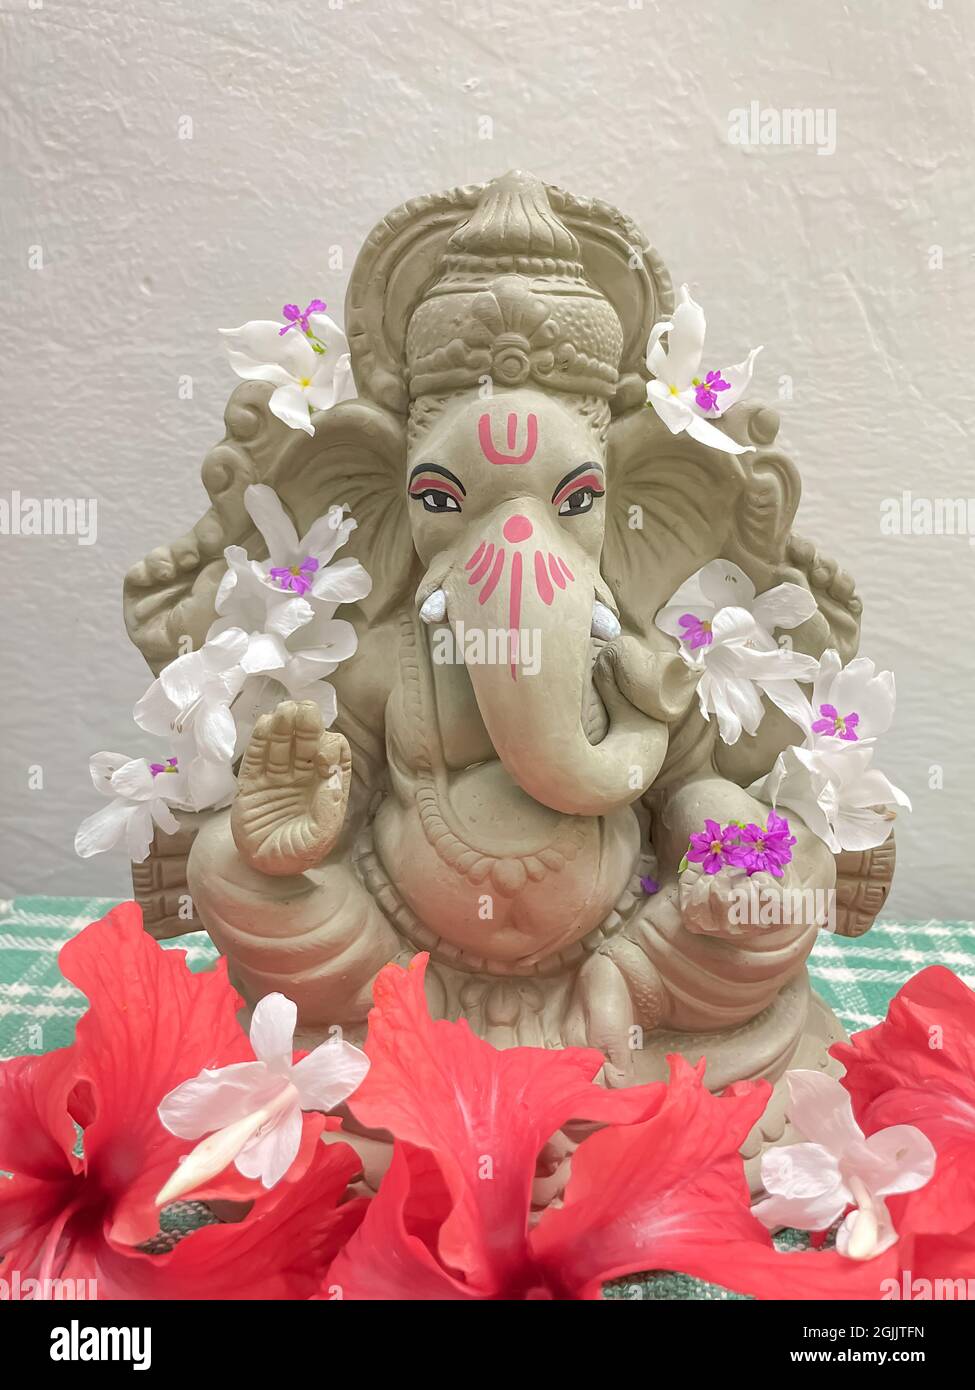 Lord Ganesh Idol aus Schlamm gemacht und mit weißen und roten Blumen geschmückt Stockfoto